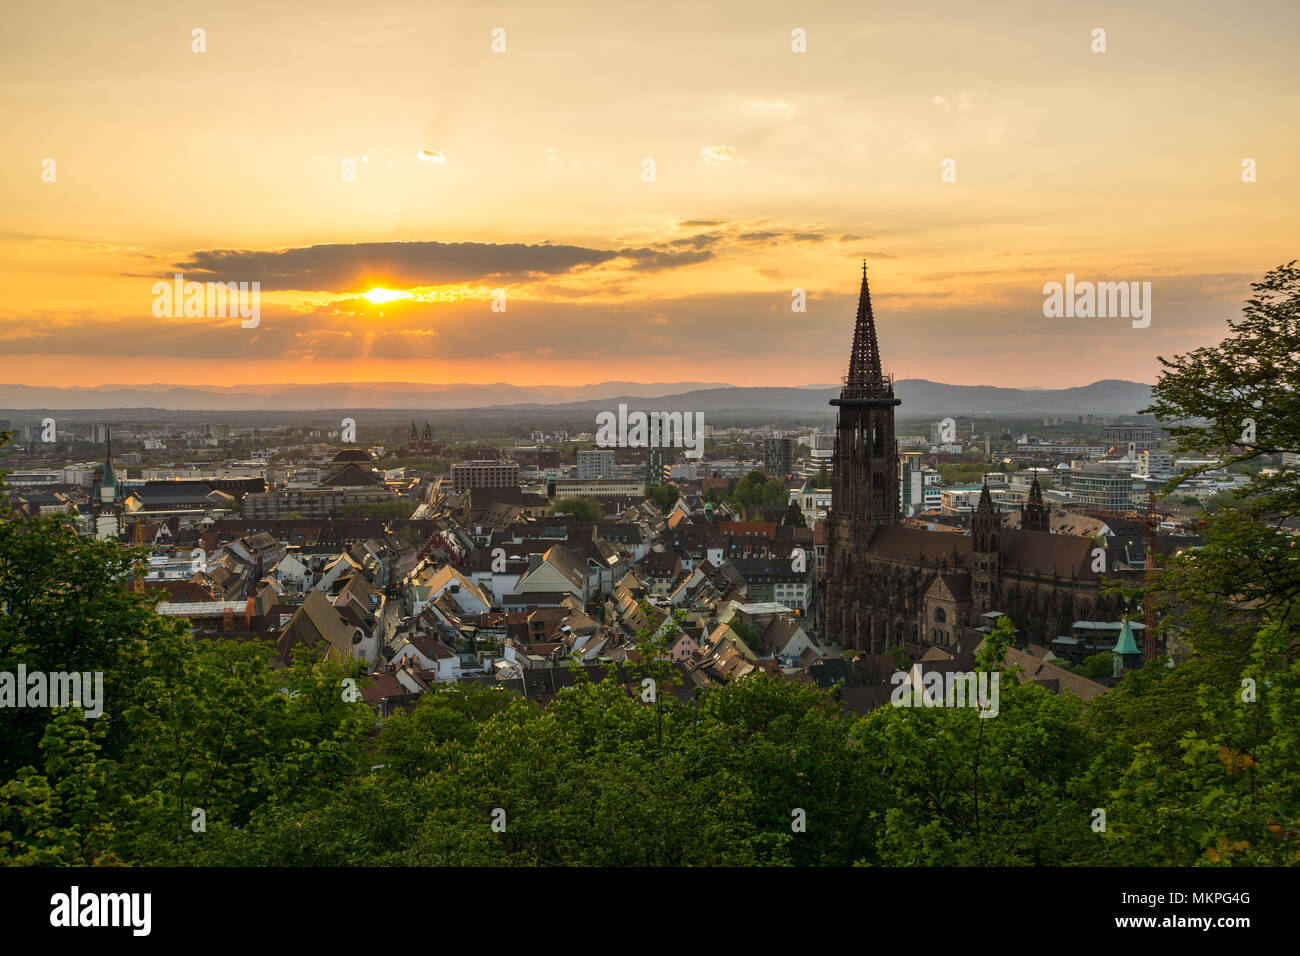 Germania, romantico la luce del tramonto sopra i tetti della città di Freiburg im Breisgau Foto Stock